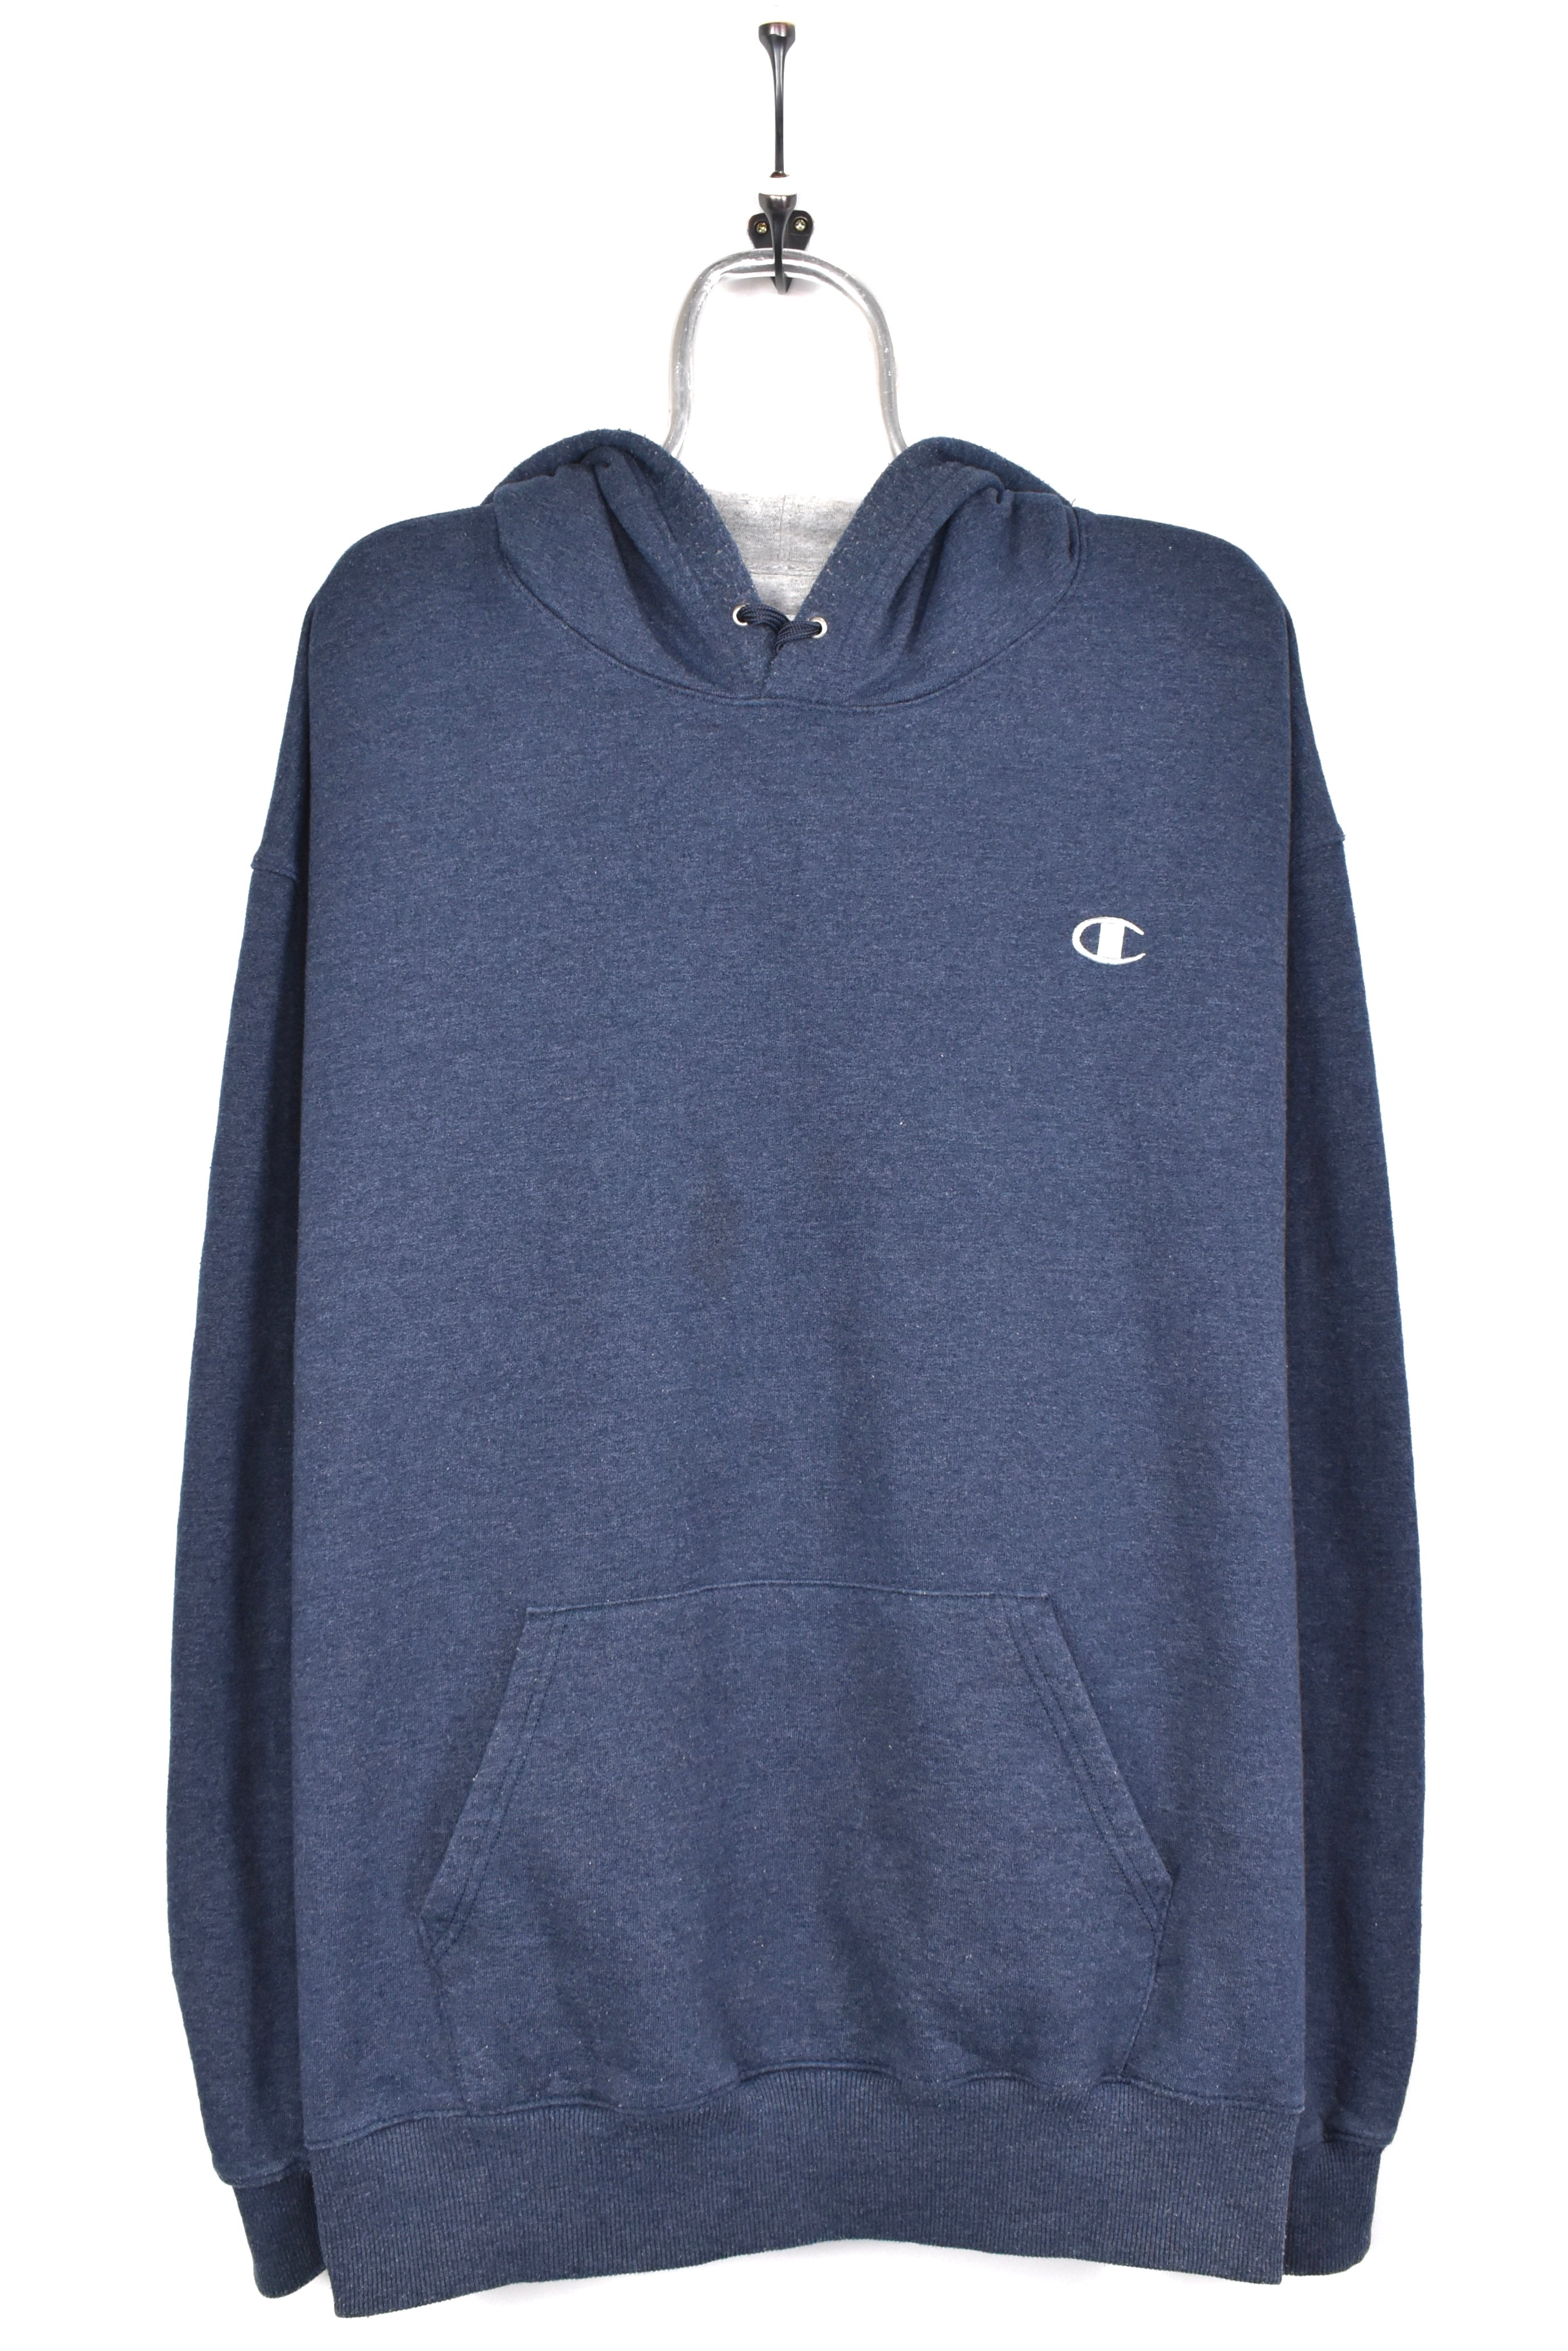 Modern Champion hoodie, navy blue embroidered sweatshirt - AU XXL PRO SPORT